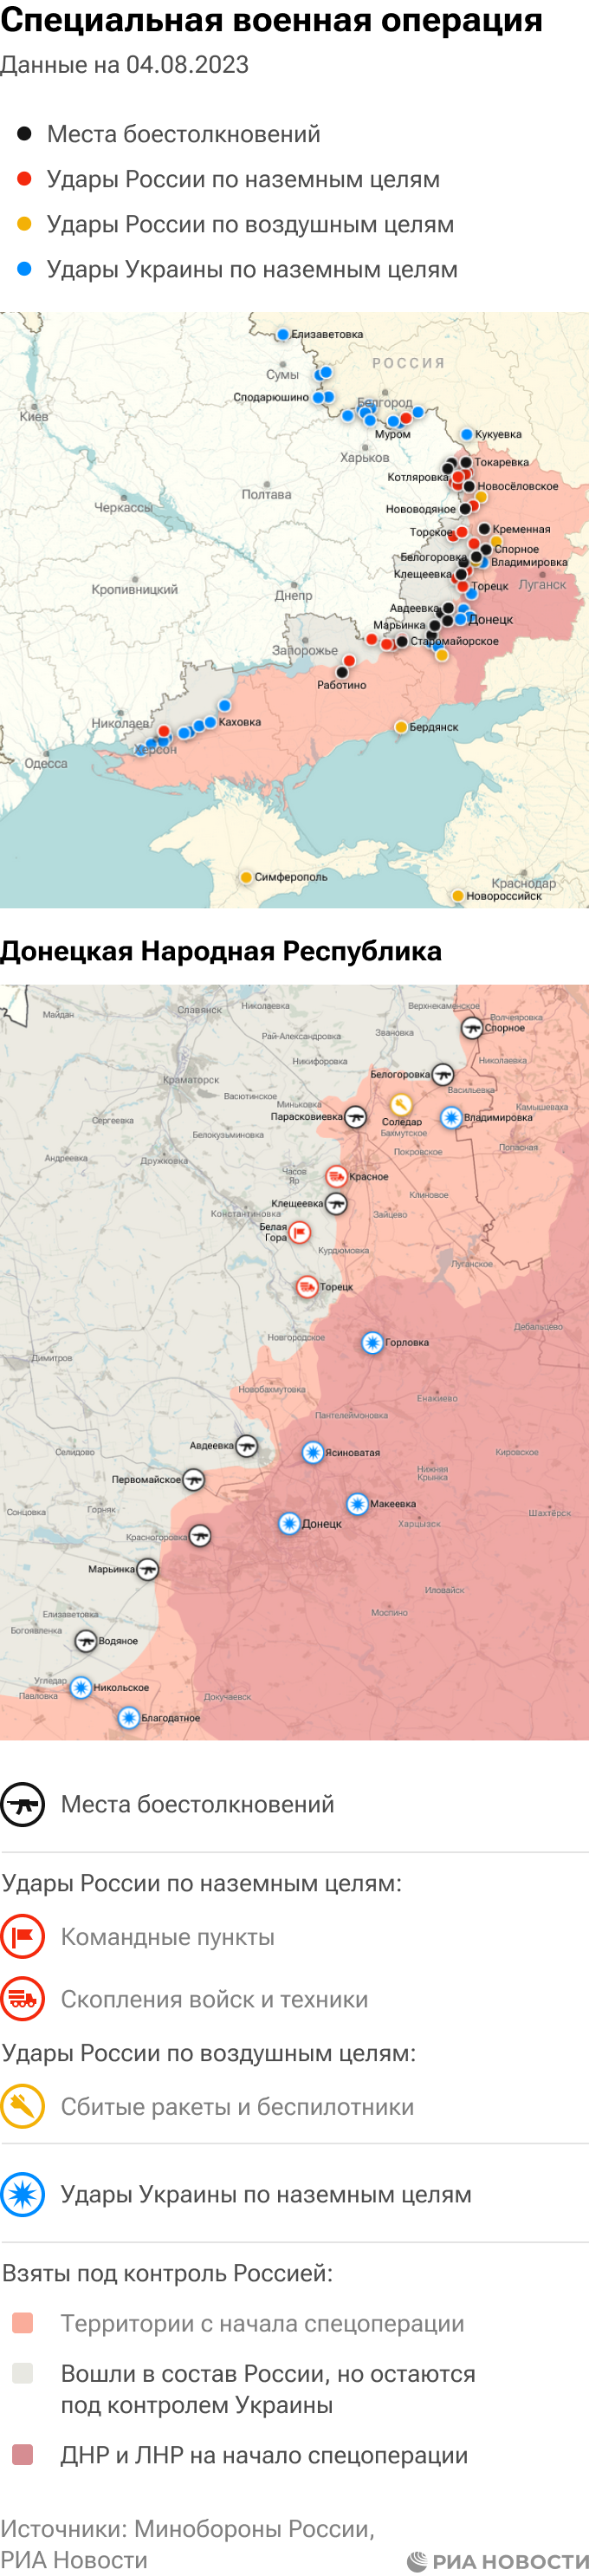 Война на украине карта боевых